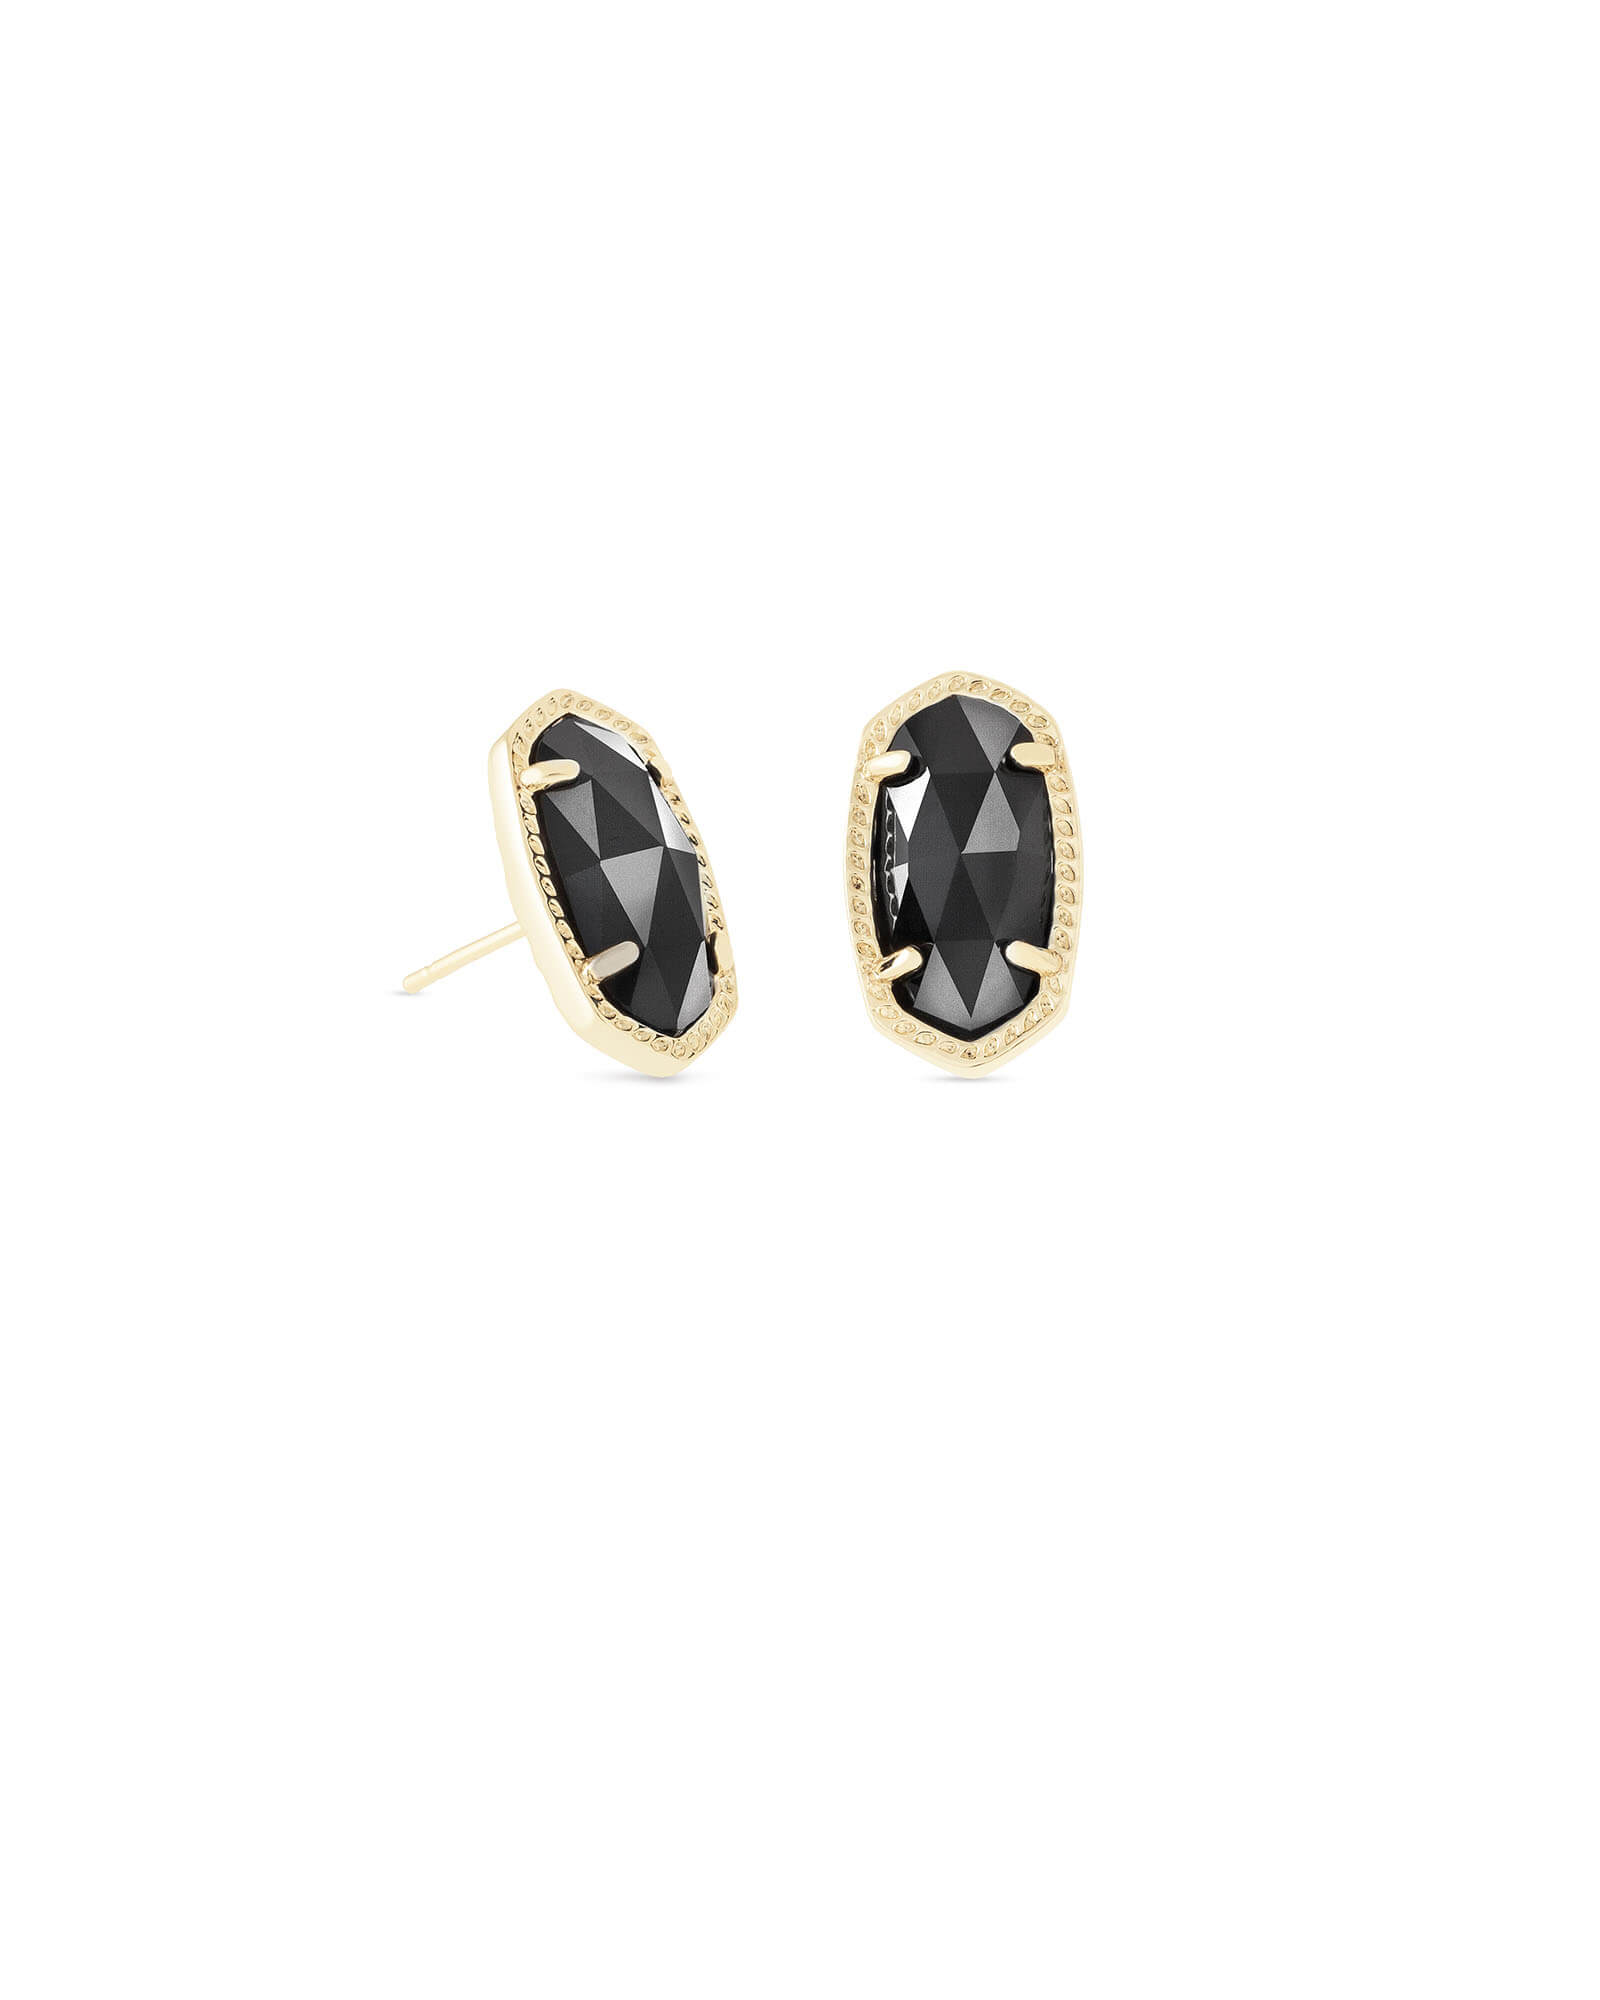 Kendra Scott Ellie Gold Stud Earrings in Black | Opaque Glass